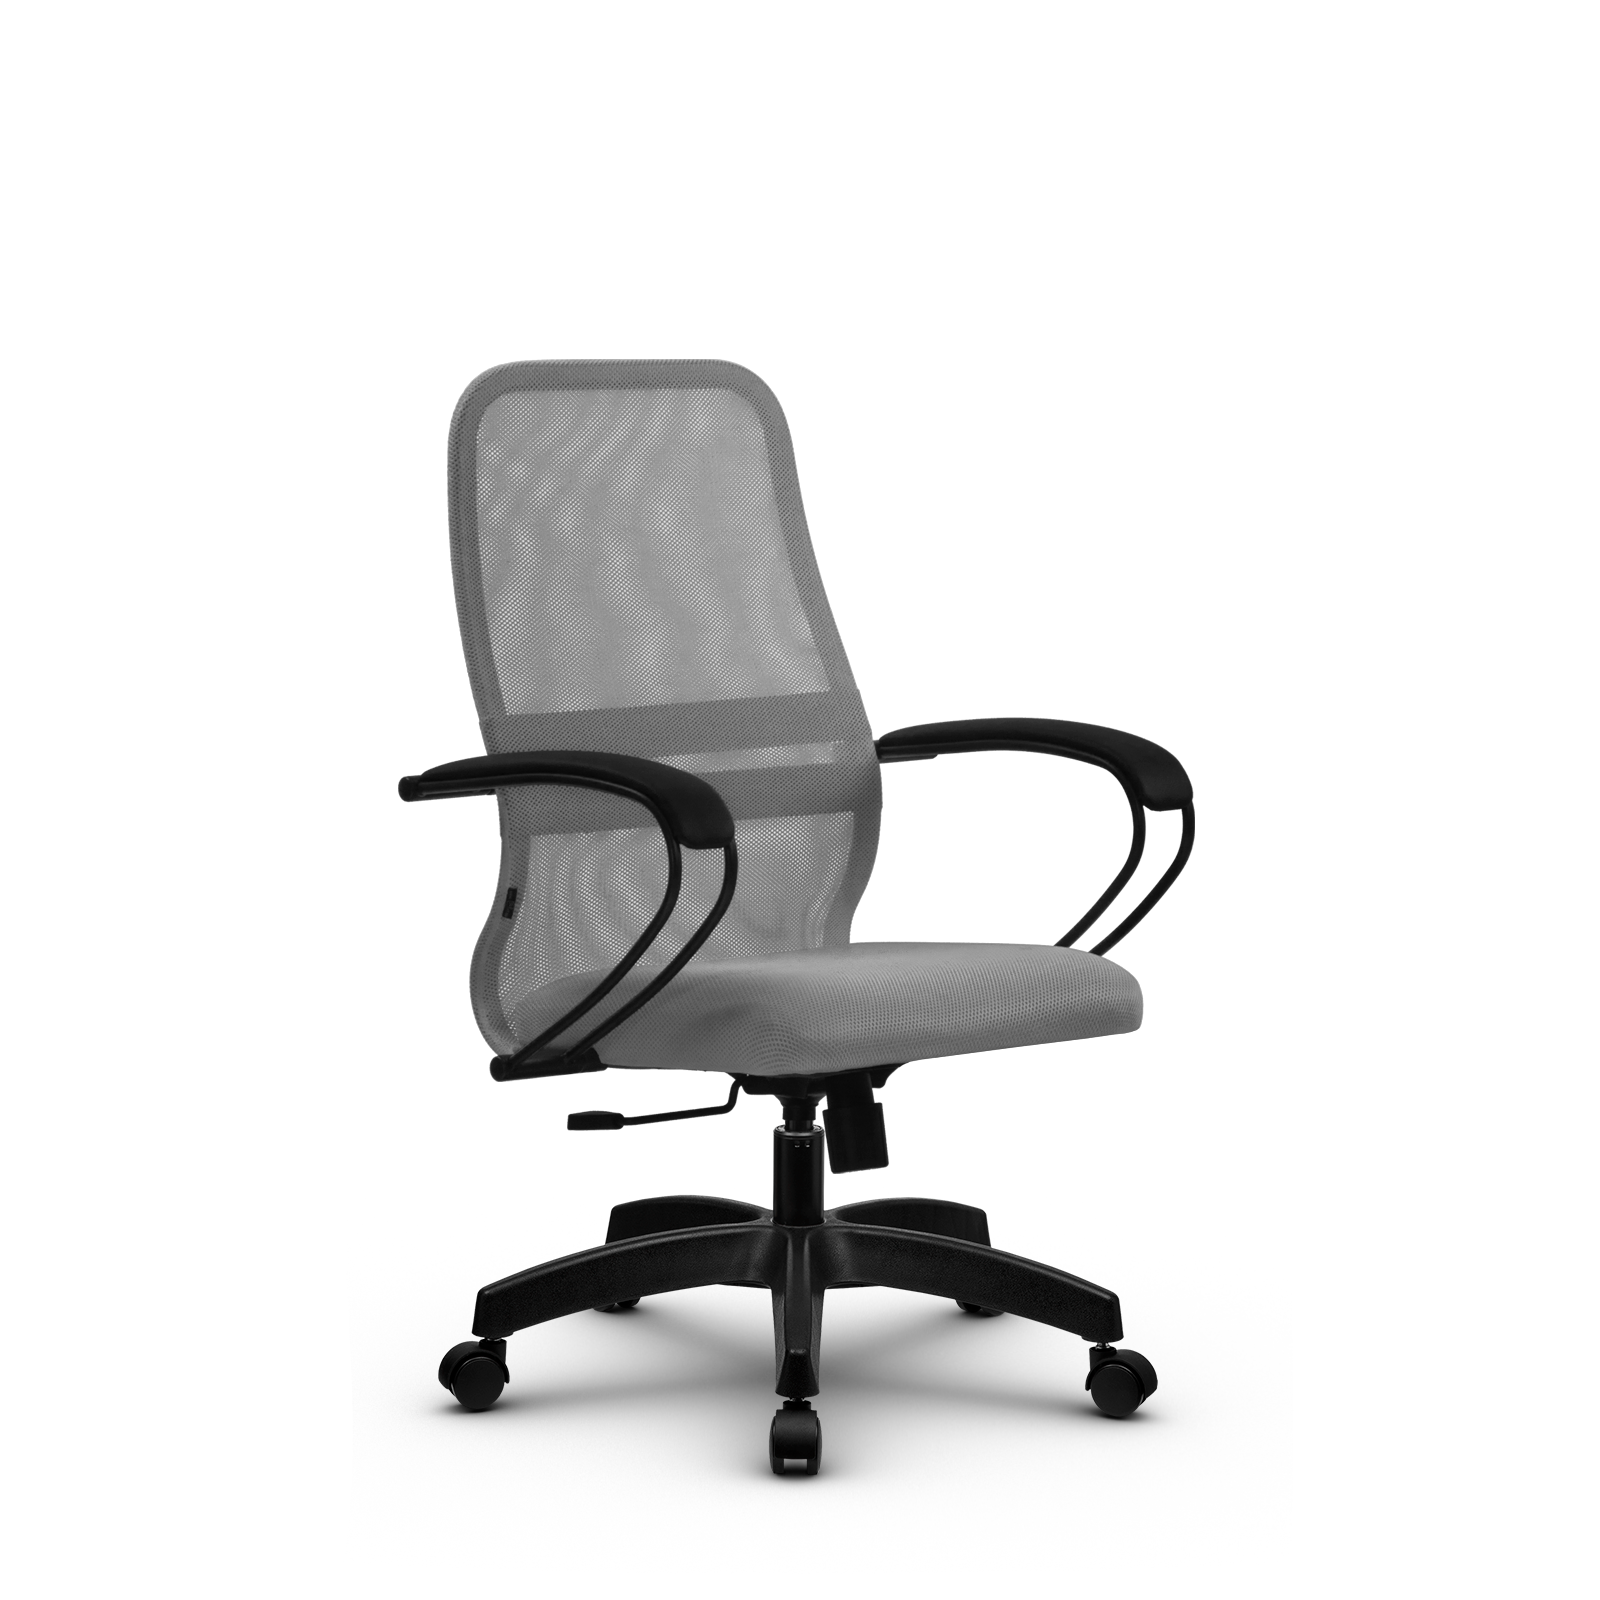 90488600 Офисное кресло Su z312452457 прочный сетчатый материал цвет светло-серый STLM-0248478 МЕТТА